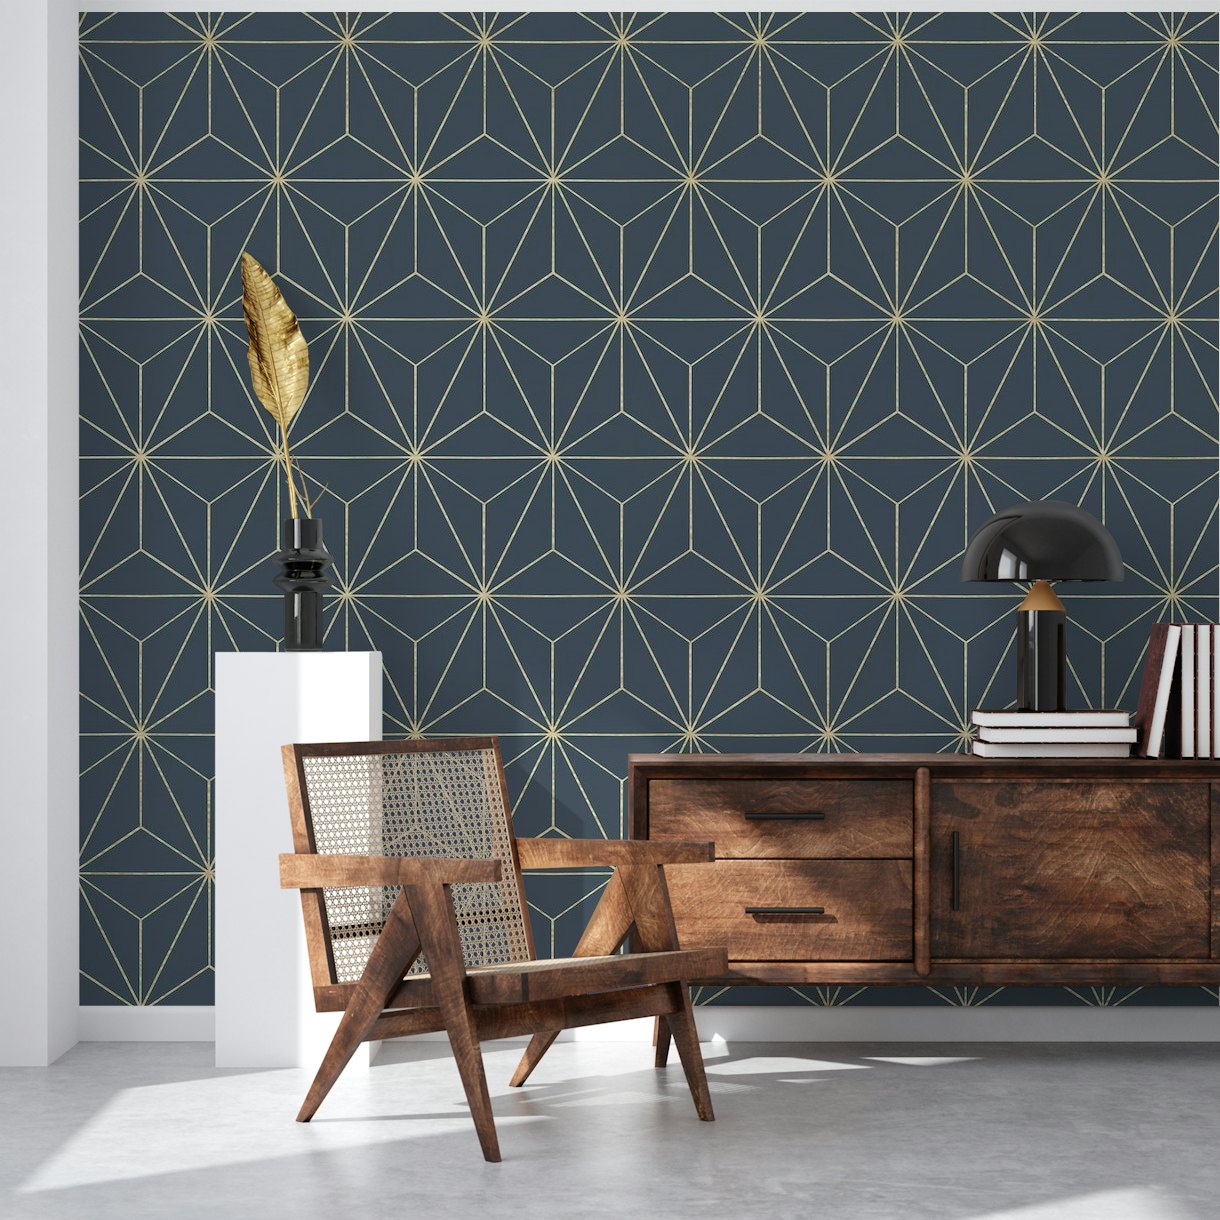 Geometric Glamor 4 wallpaper